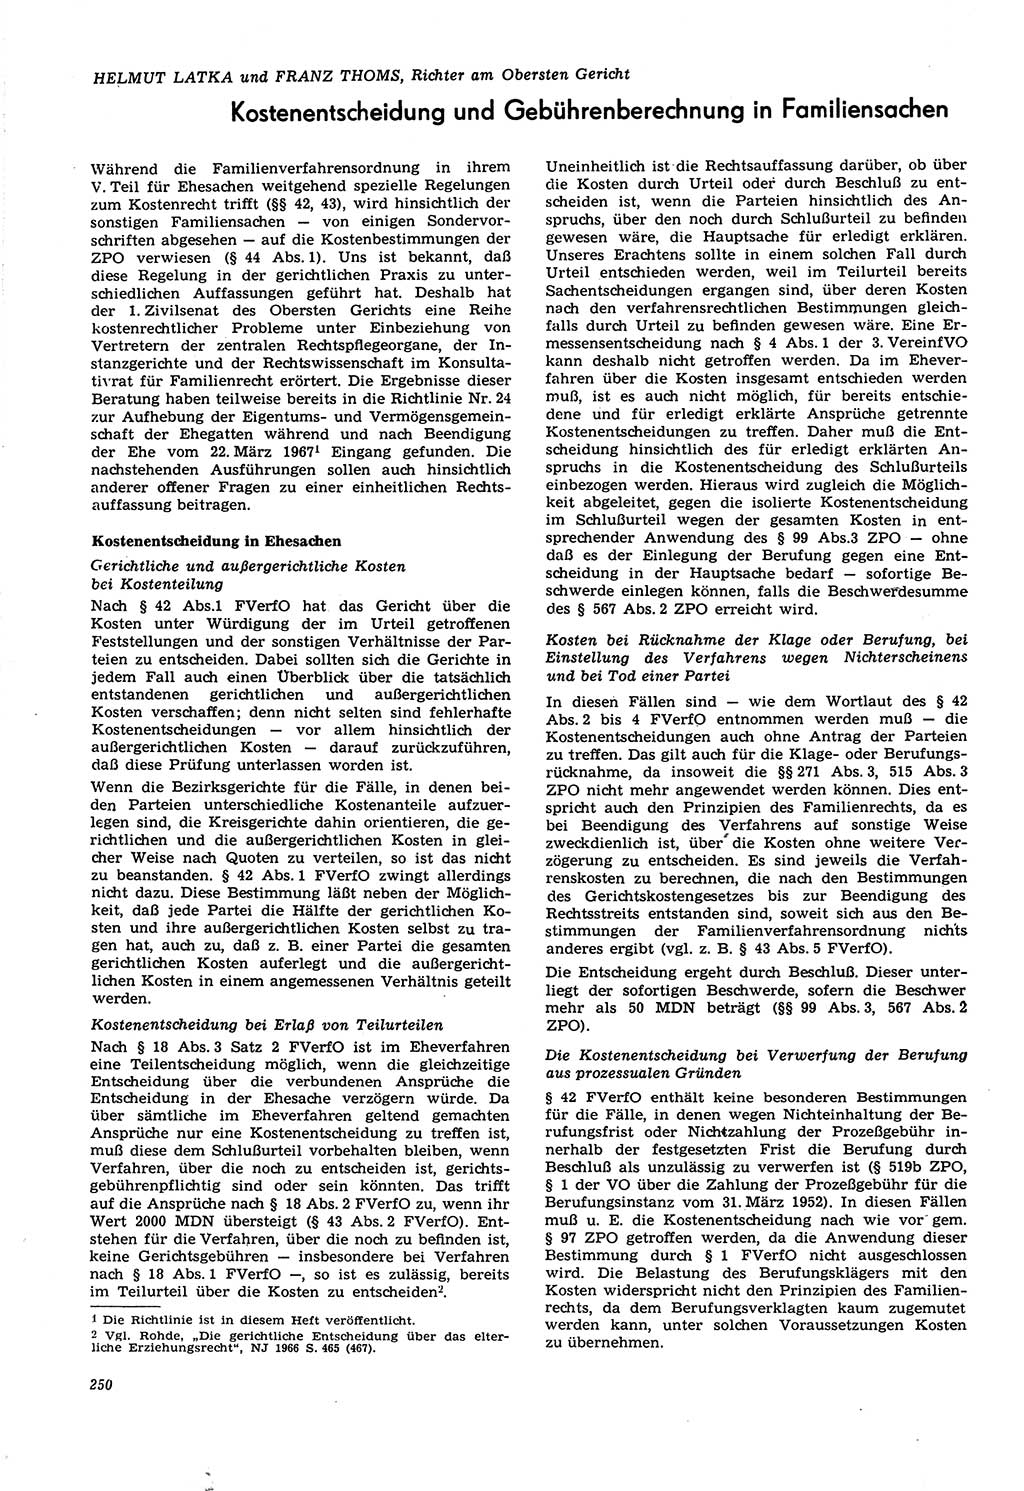 Neue Justiz (NJ), Zeitschrift für Recht und Rechtswissenschaft [Deutsche Demokratische Republik (DDR)], 21. Jahrgang 1967, Seite 250 (NJ DDR 1967, S. 250)